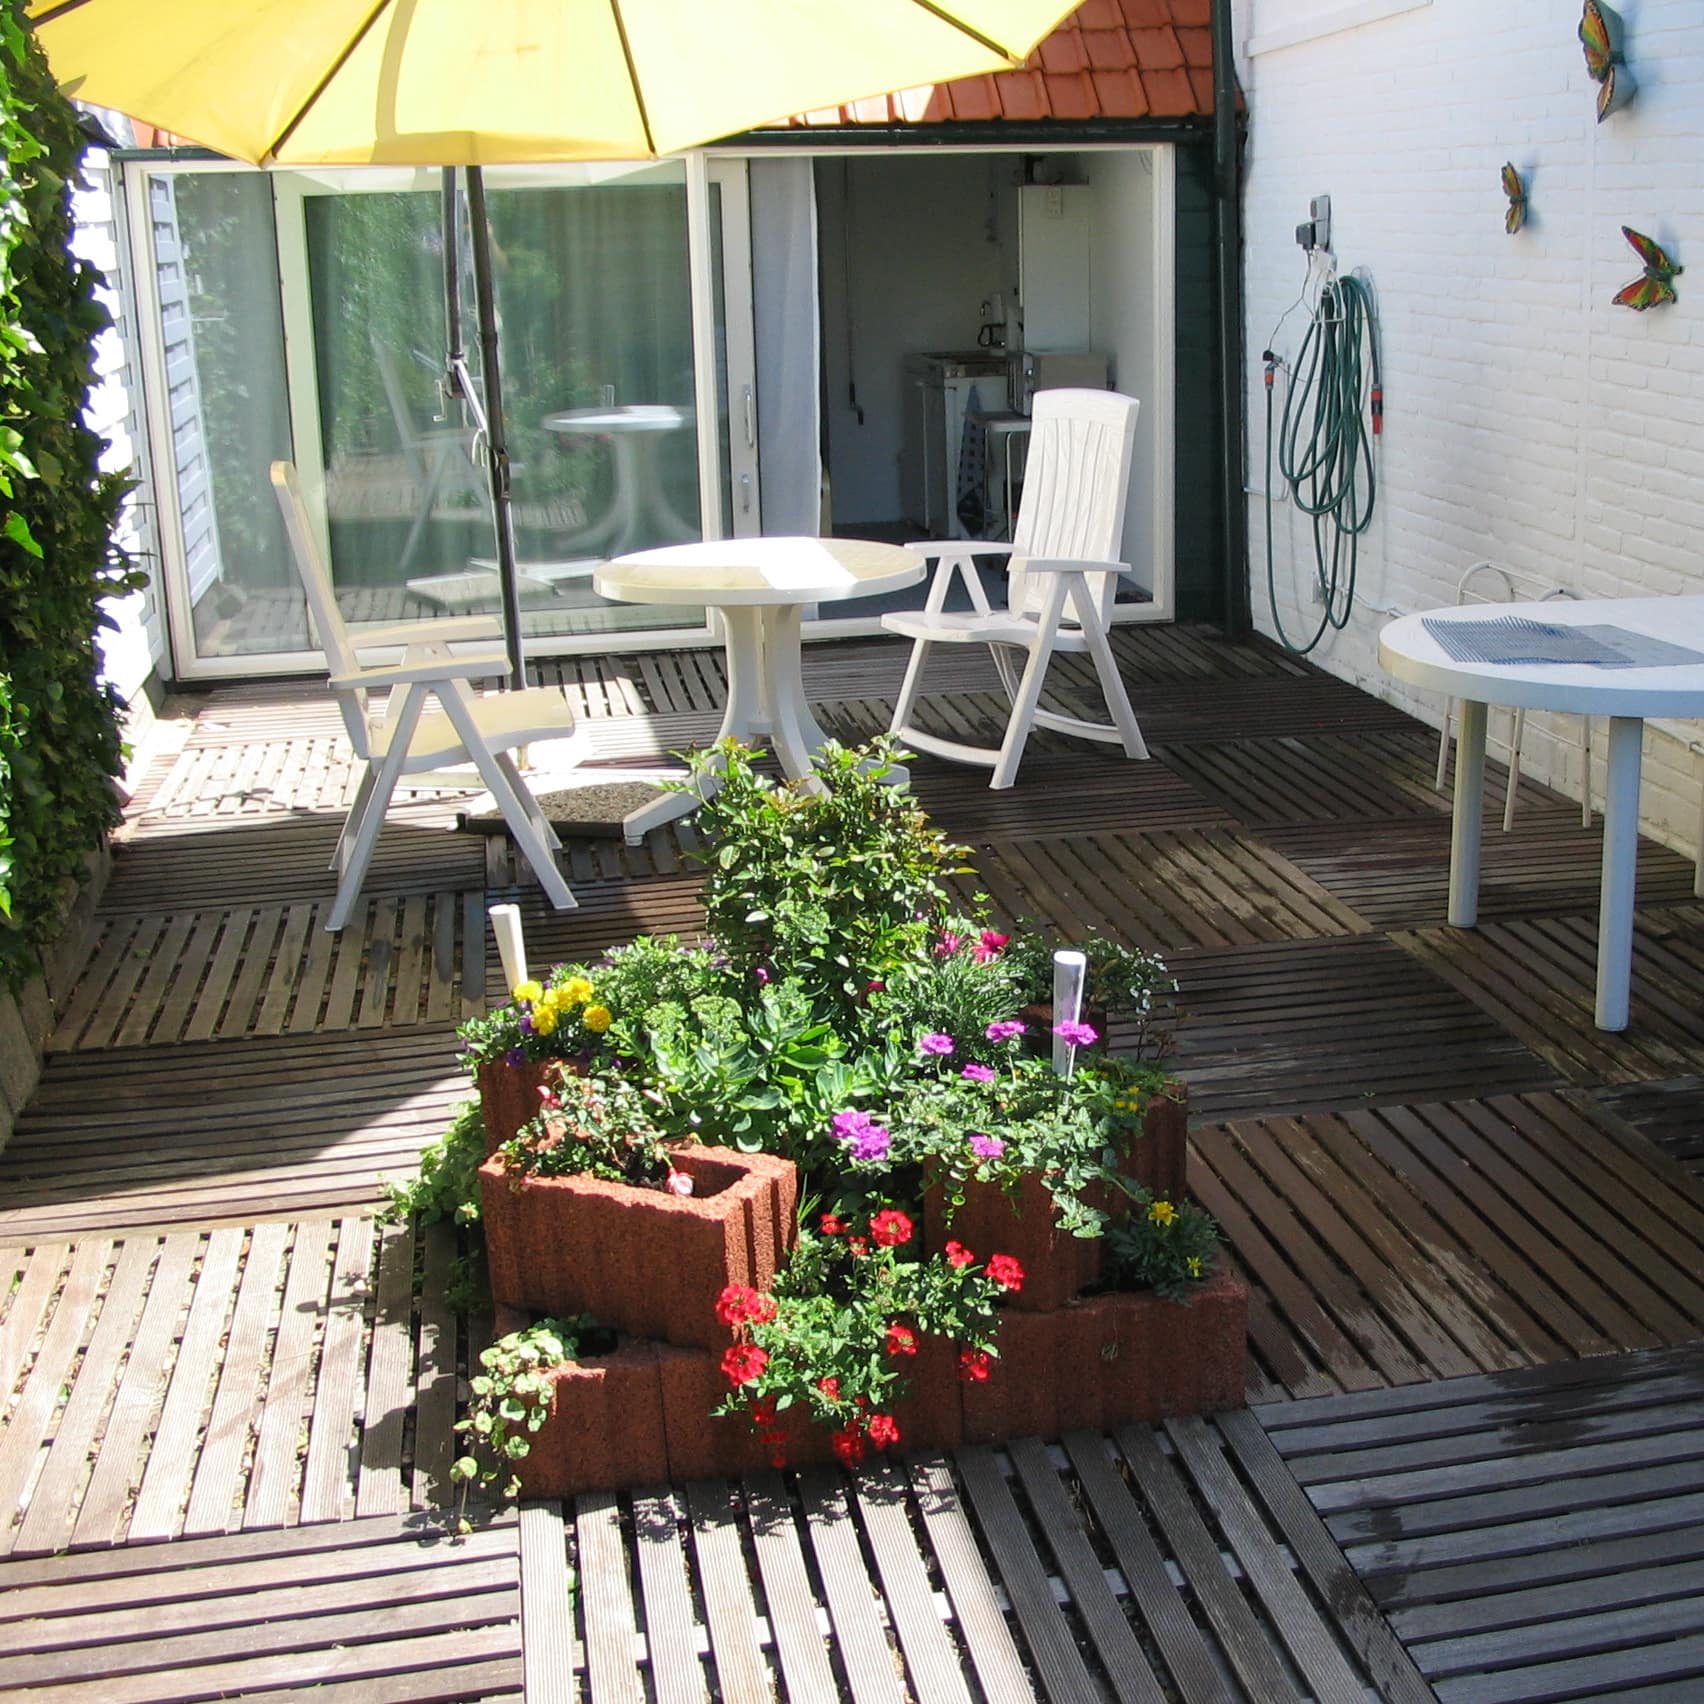 Ferienwohnung in den Niederlanden mit großer Sonnenterrasse, darauf Blumen und Esstisch mit Stühlen unter einem Sonnenschirm